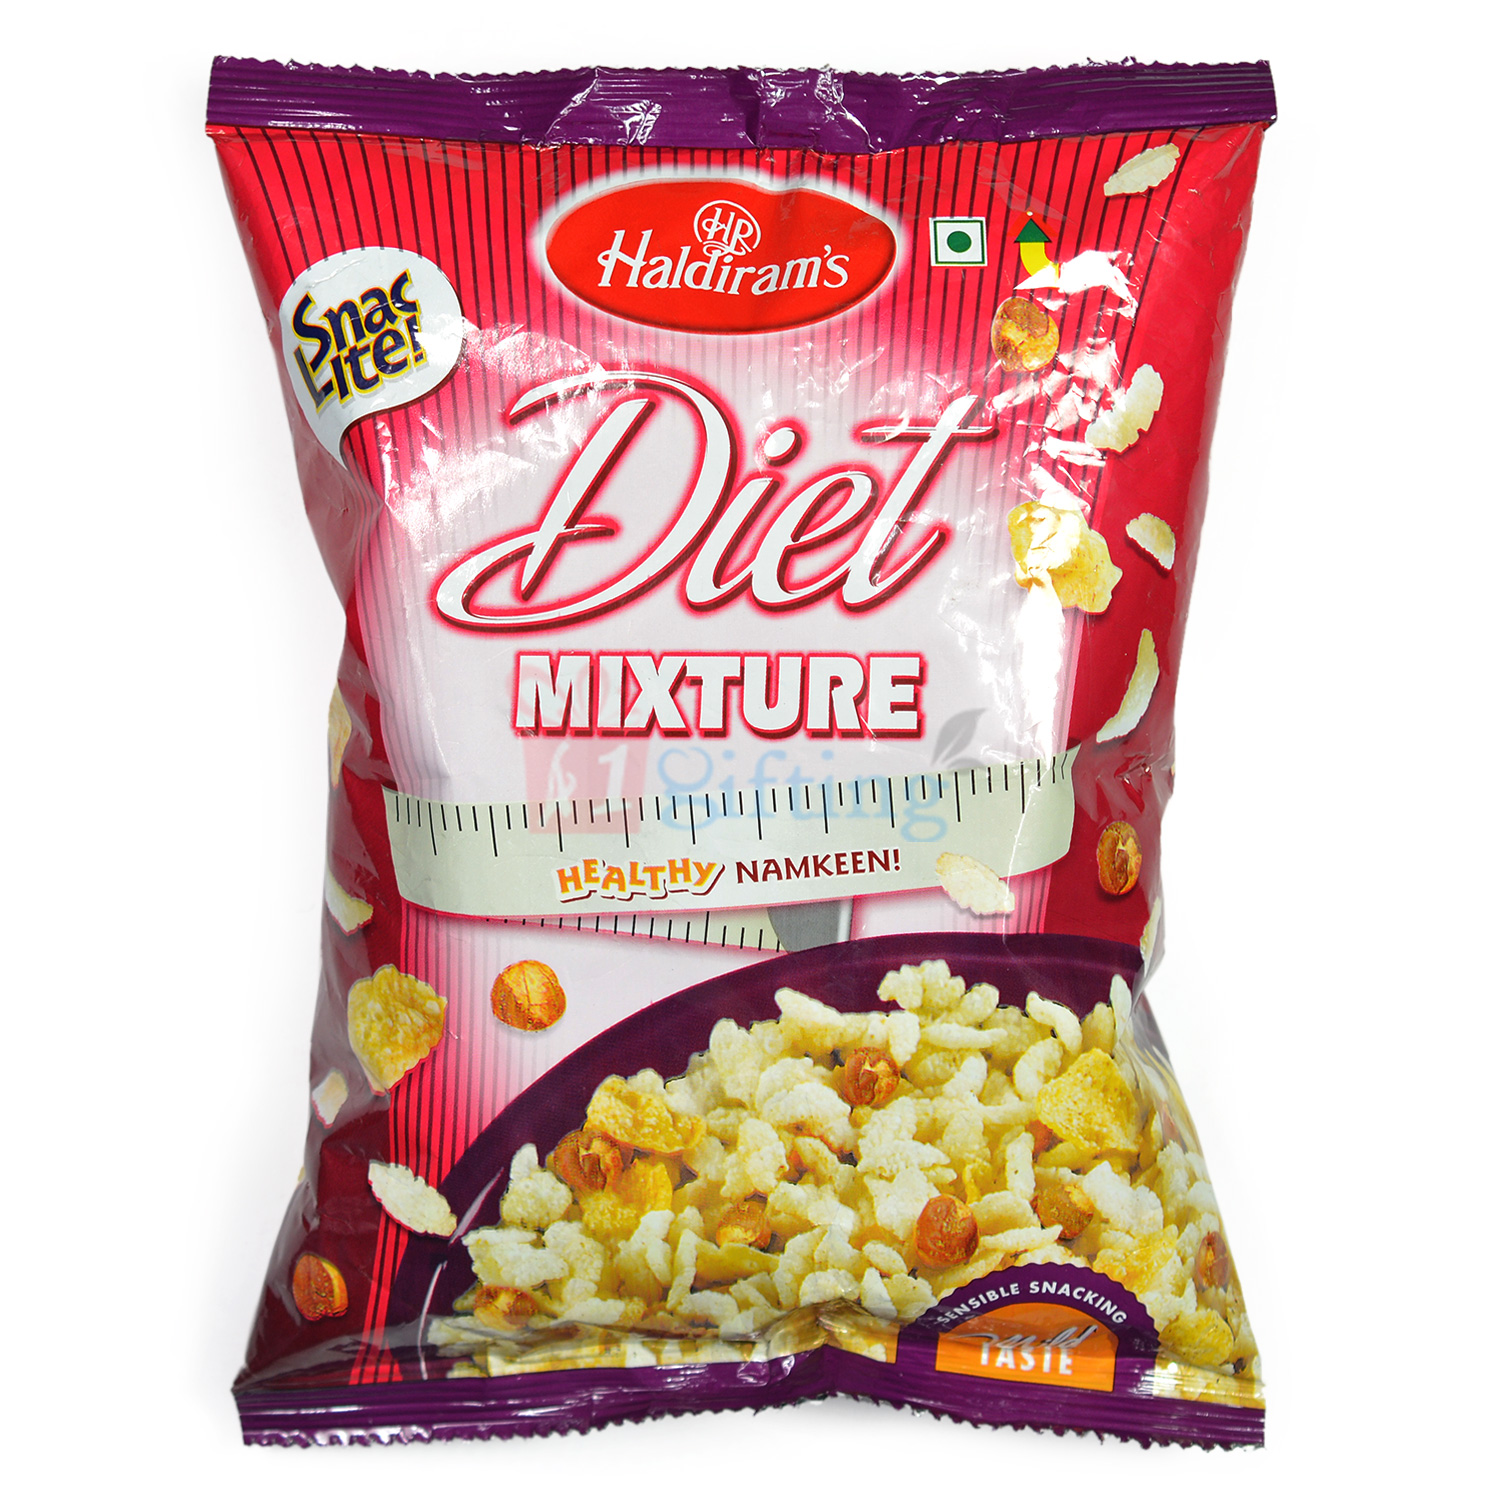 Diet Mixture Healthy Namkeen by Haldiram